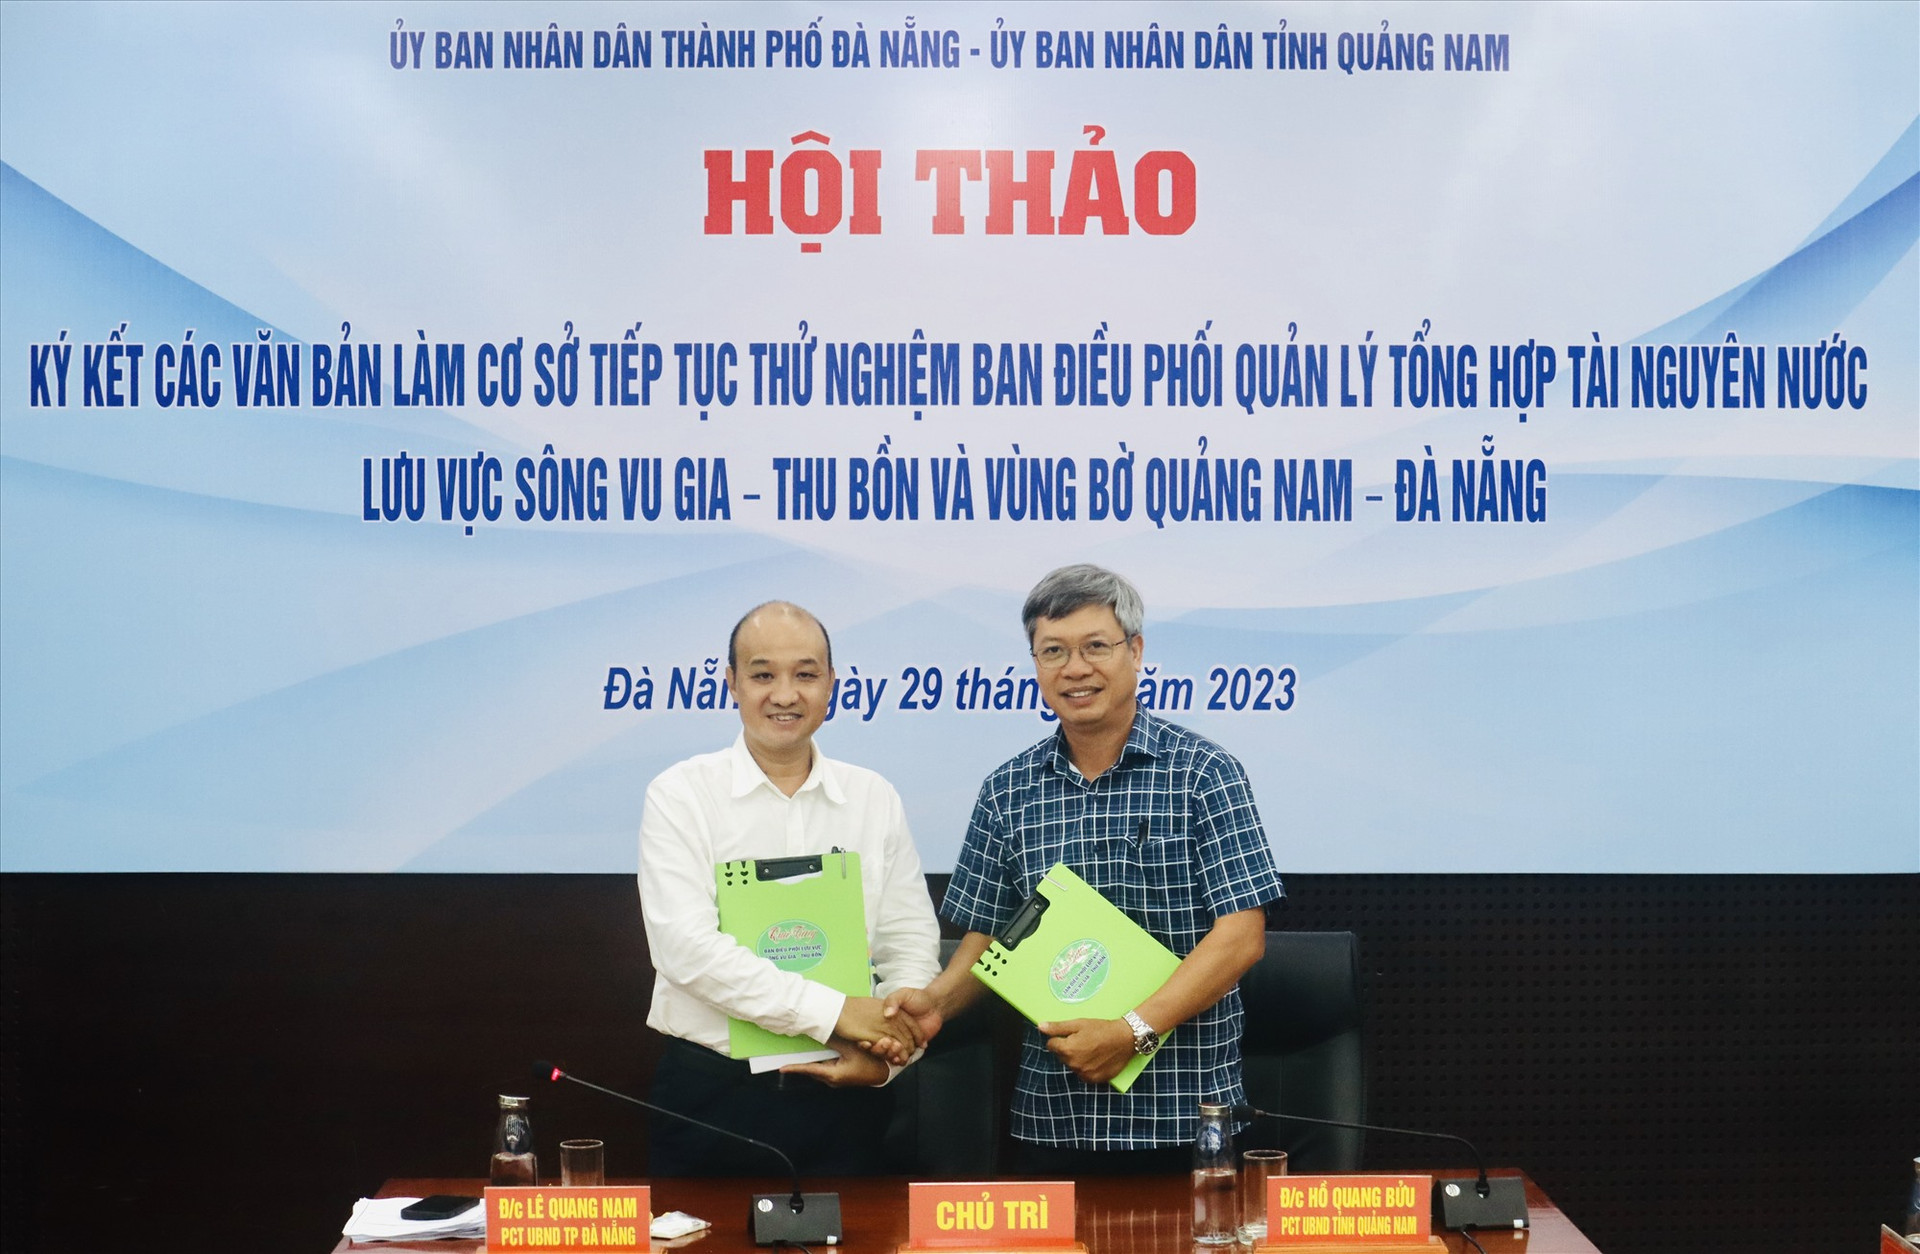 Lãnh đạo UBND tỉnh Quảng Nam và TP.Đà Nẵng ký kết thỏa thuận quản lý hệ thống sông Vu Gia - Thu Bồn và vùng bờ hai địa phương. Ảnh: Q.T